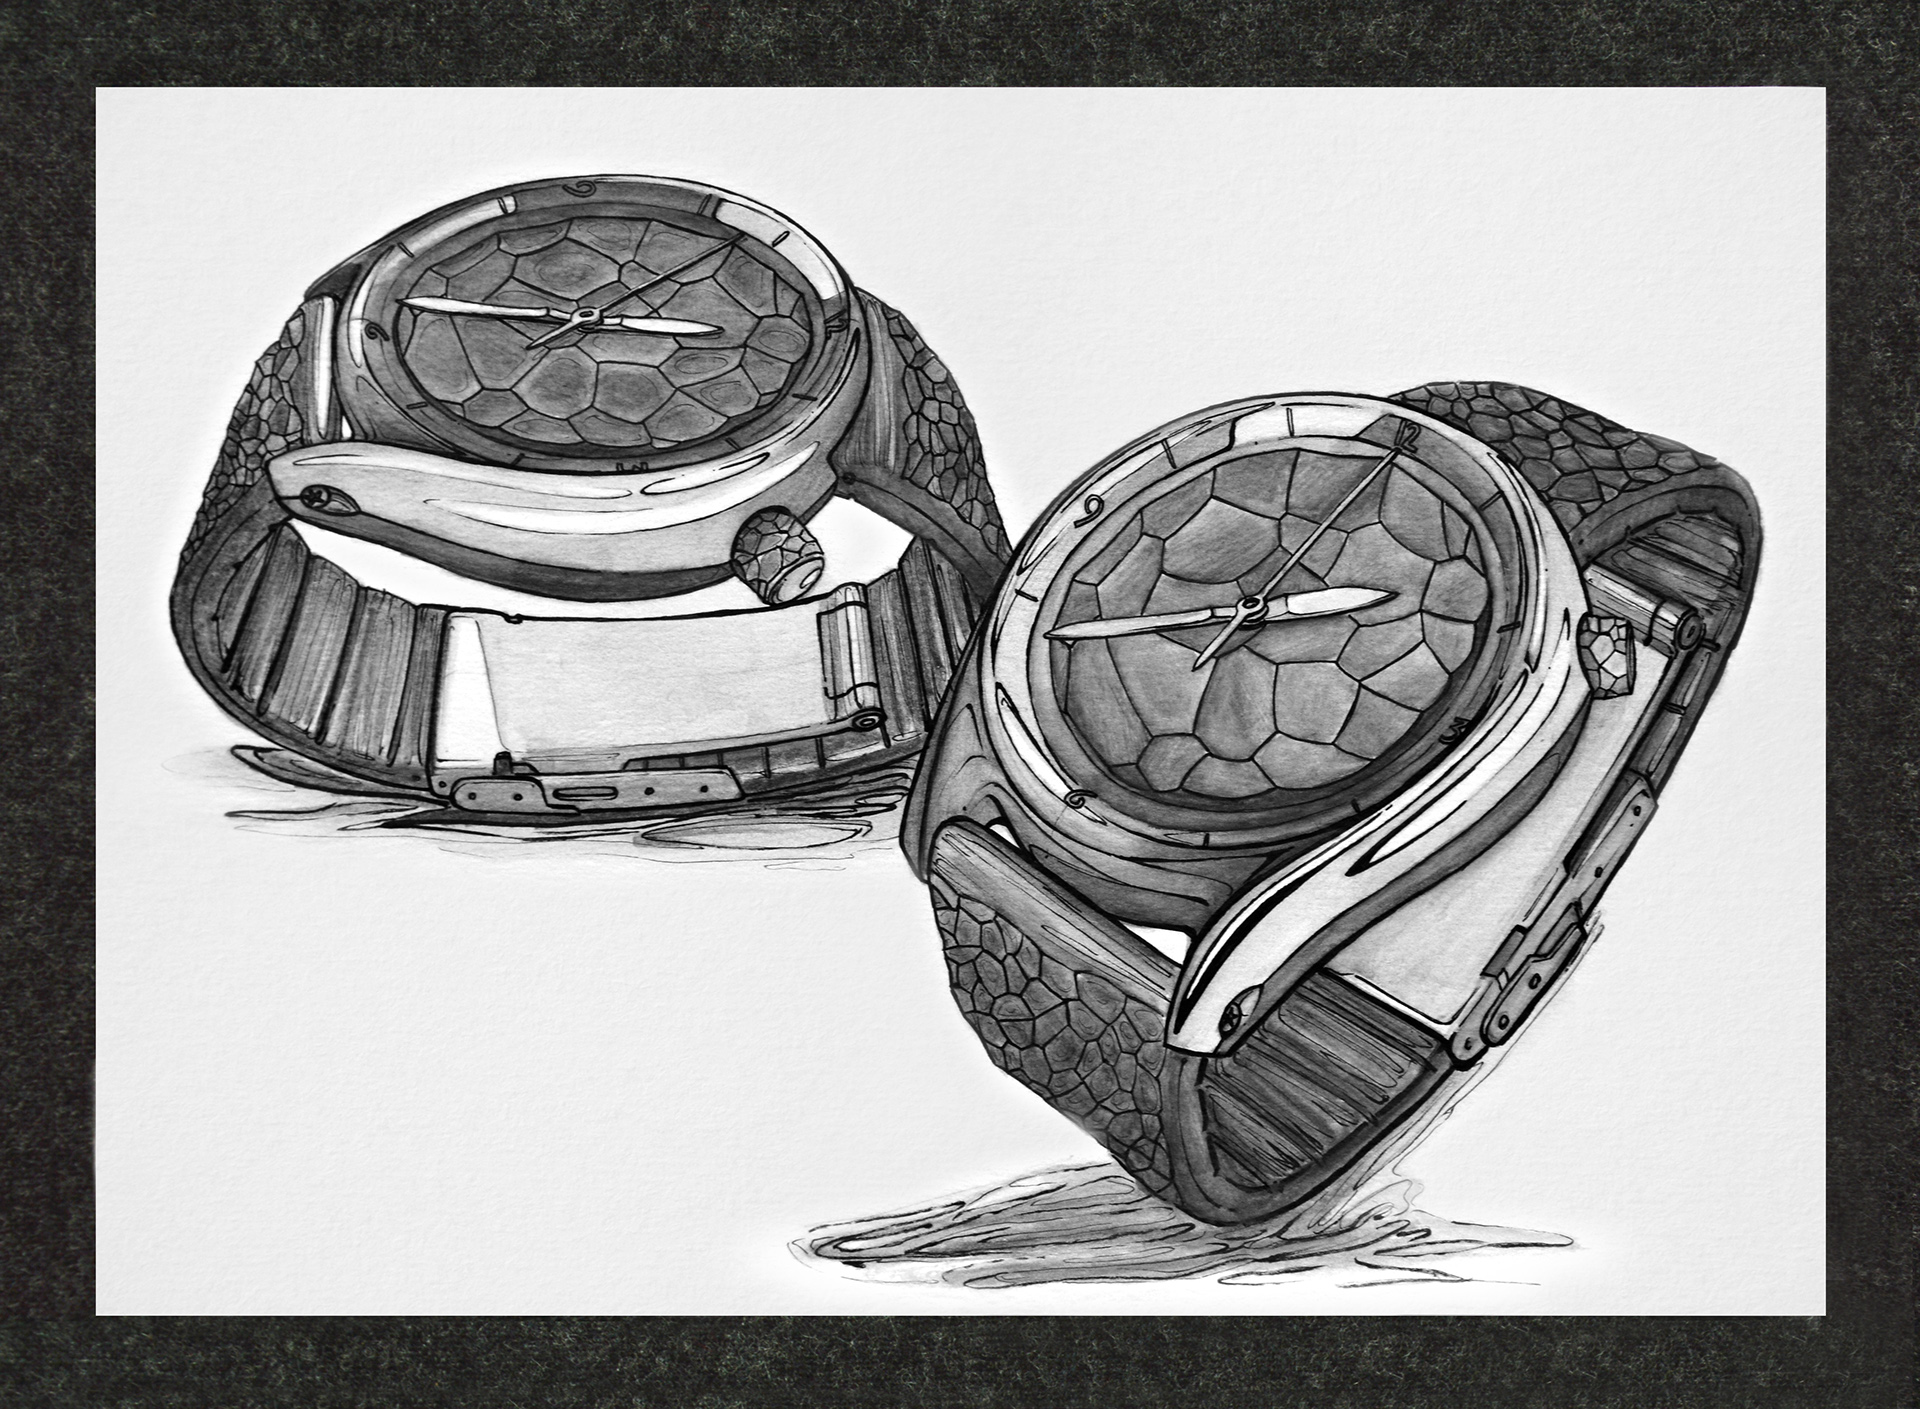 大神的小画本系列——来一波精致细腻的手表手绘!